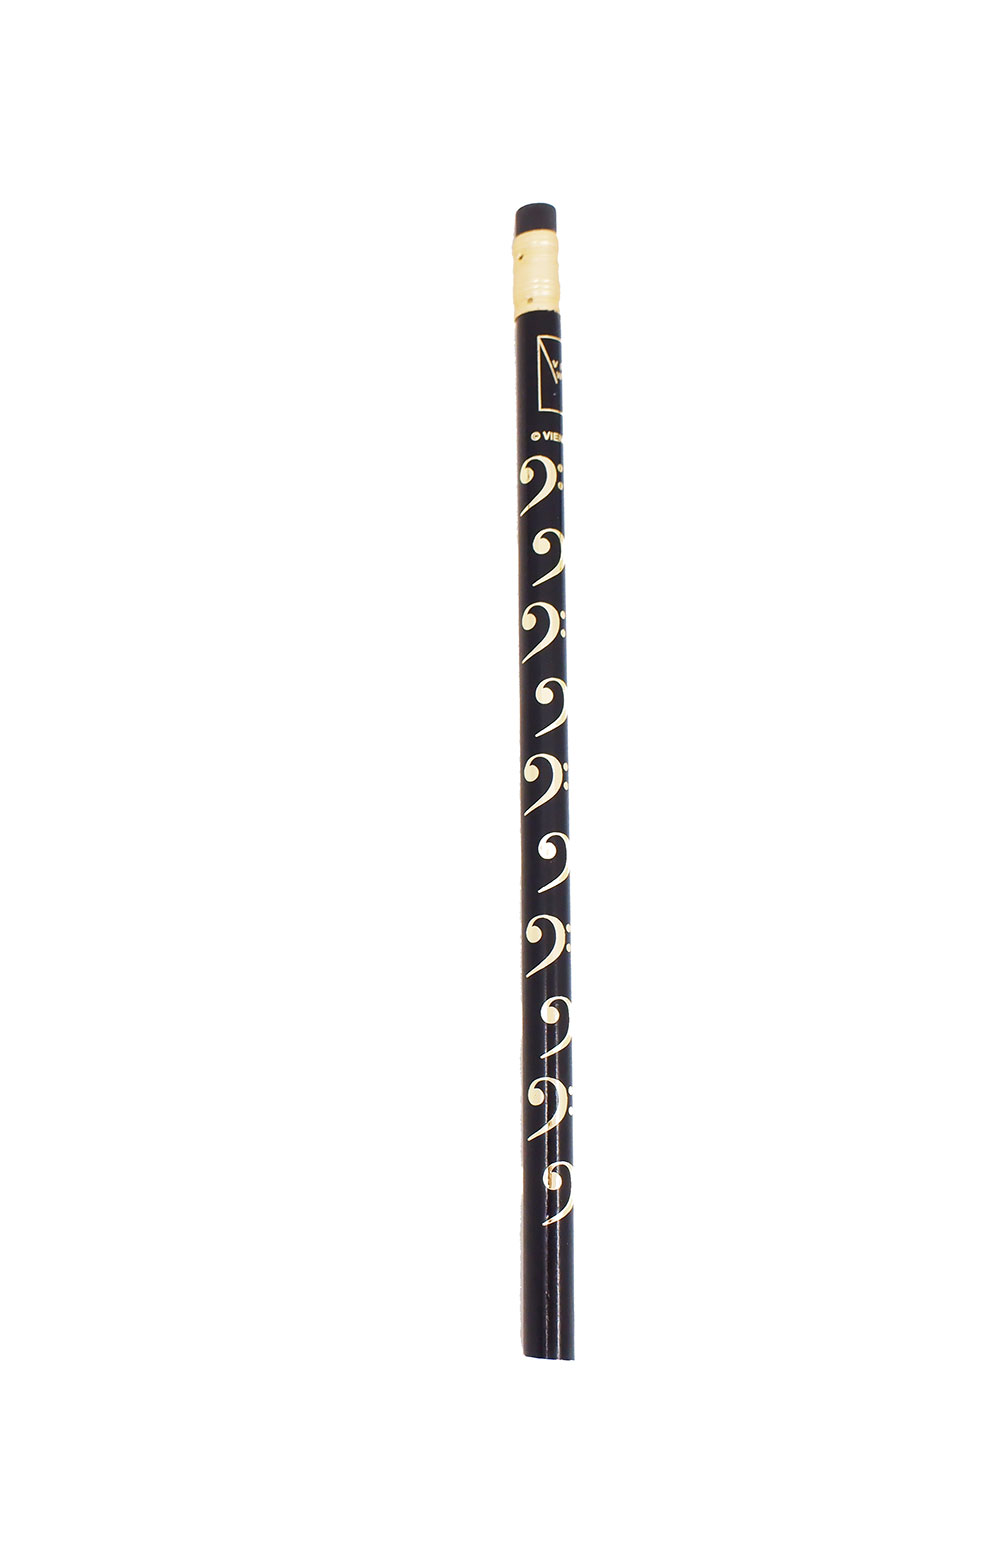 Bleistift mit Bassschlüssel Motiv, schwarz/gold